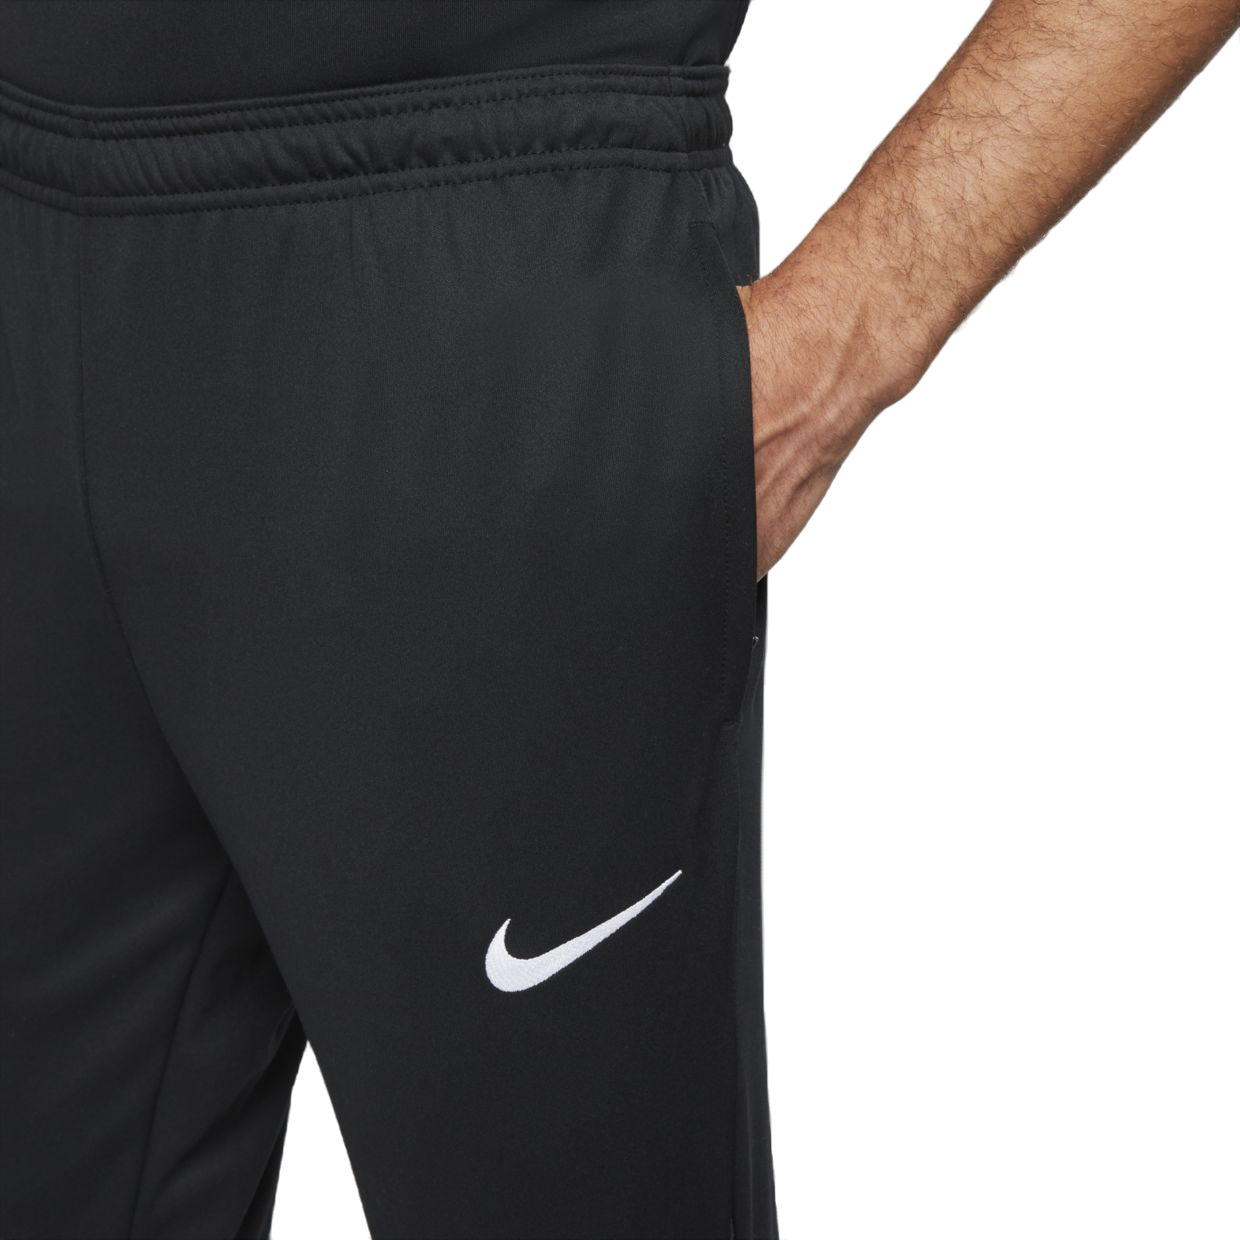 Брюки Nike M Dri-Fit Academy Pro Pants (DH9240-014) купить за 11399 руб. винтернет-магазине